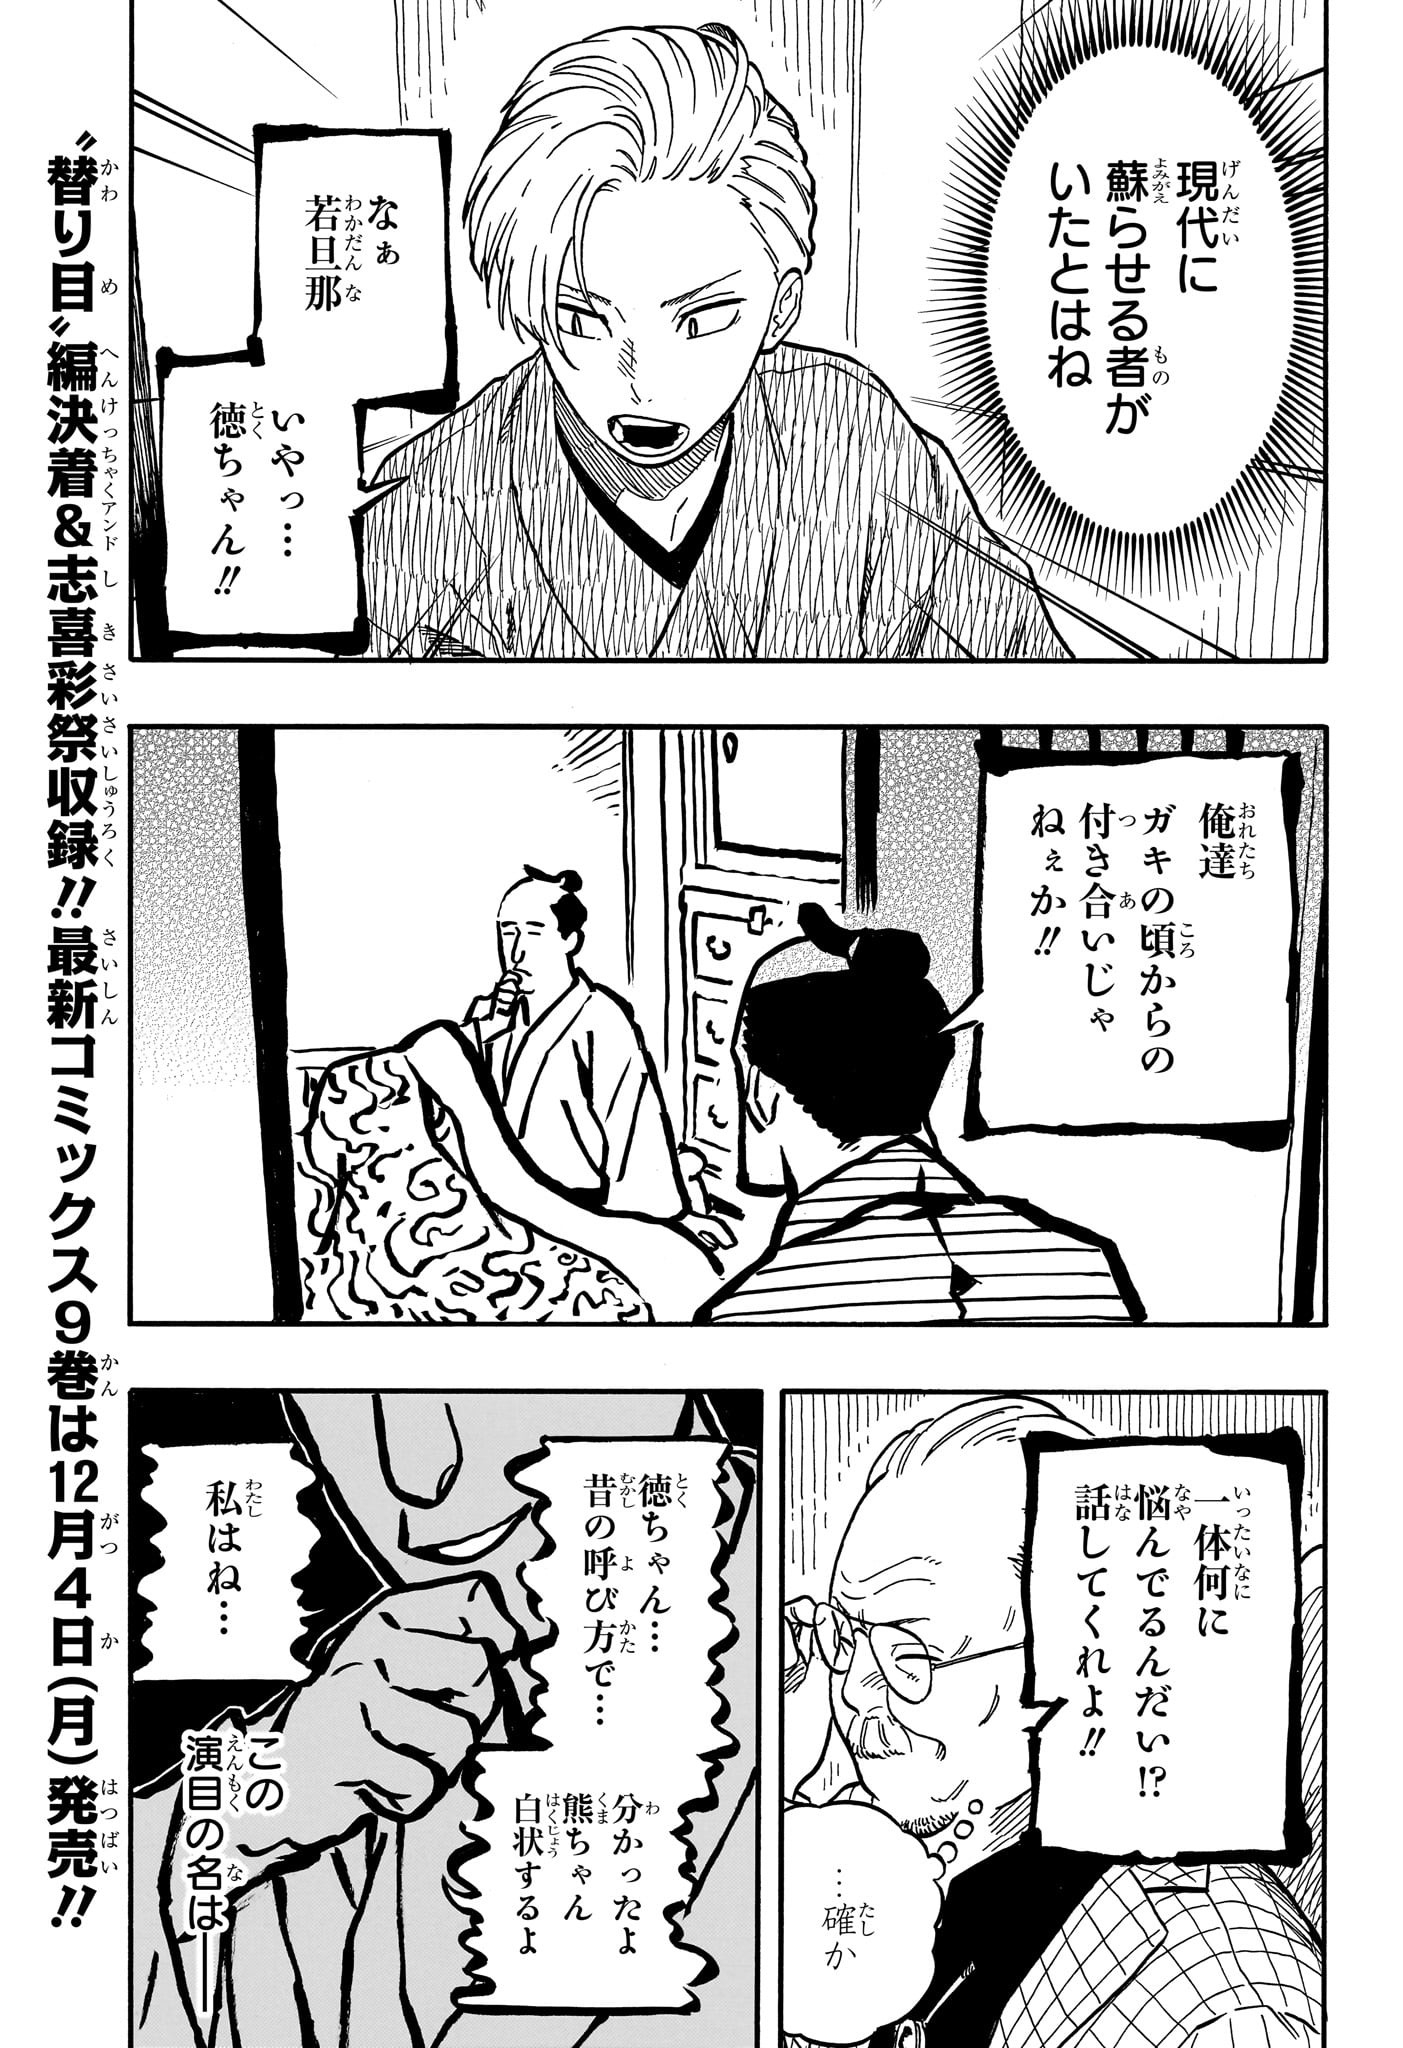 Akane-Banashi - Chapter 87 - Page 3